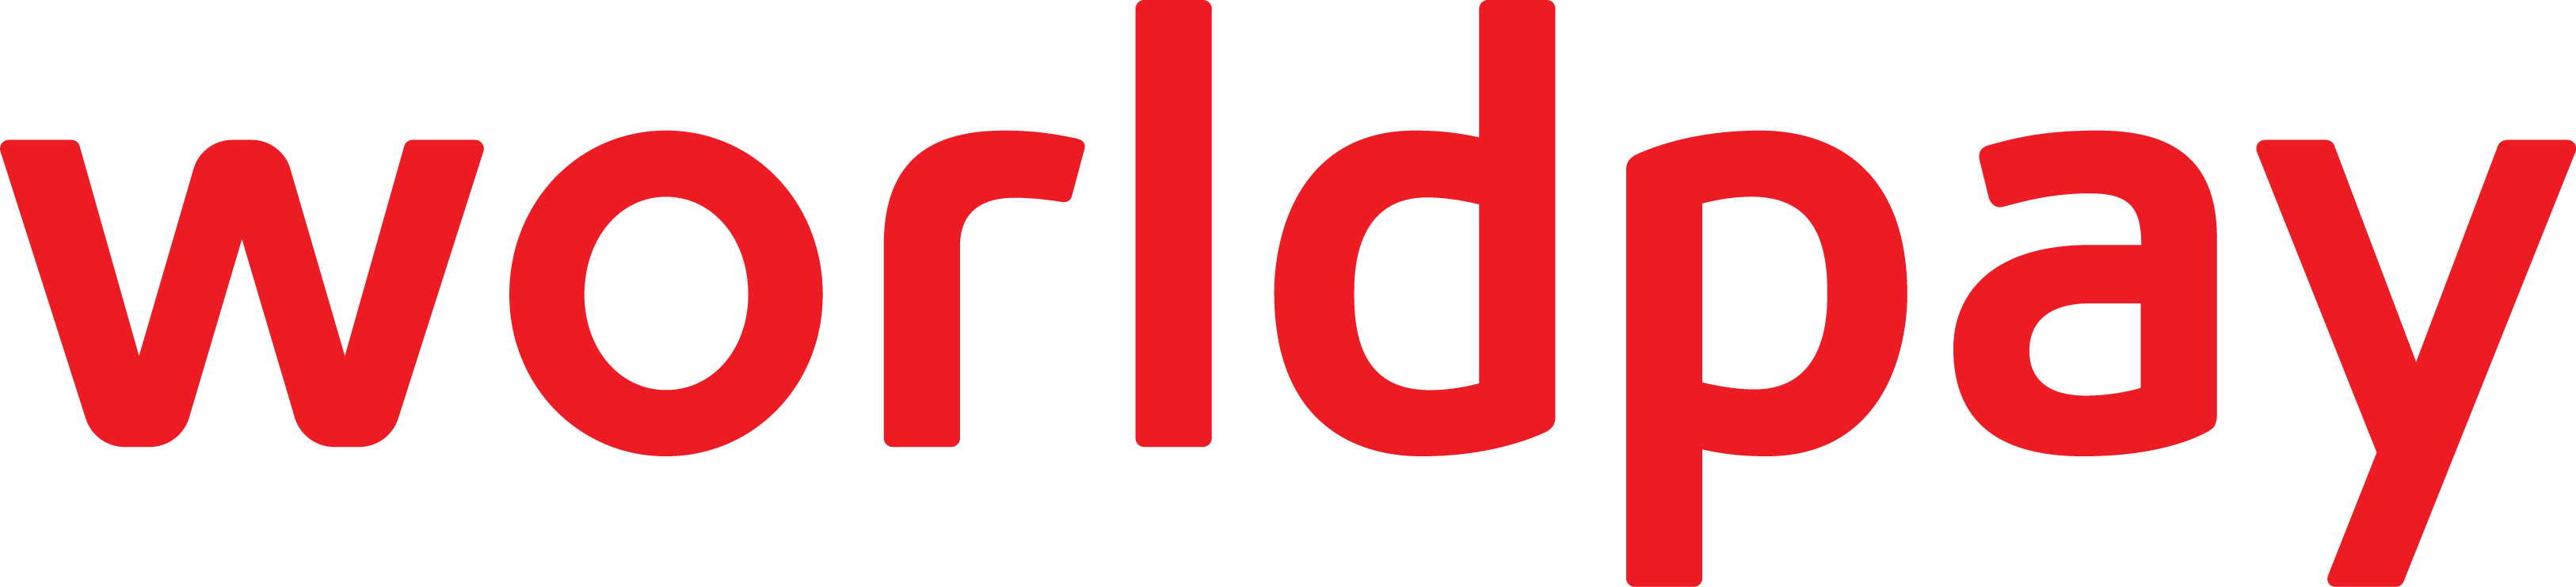 Worldpay LLC Logo